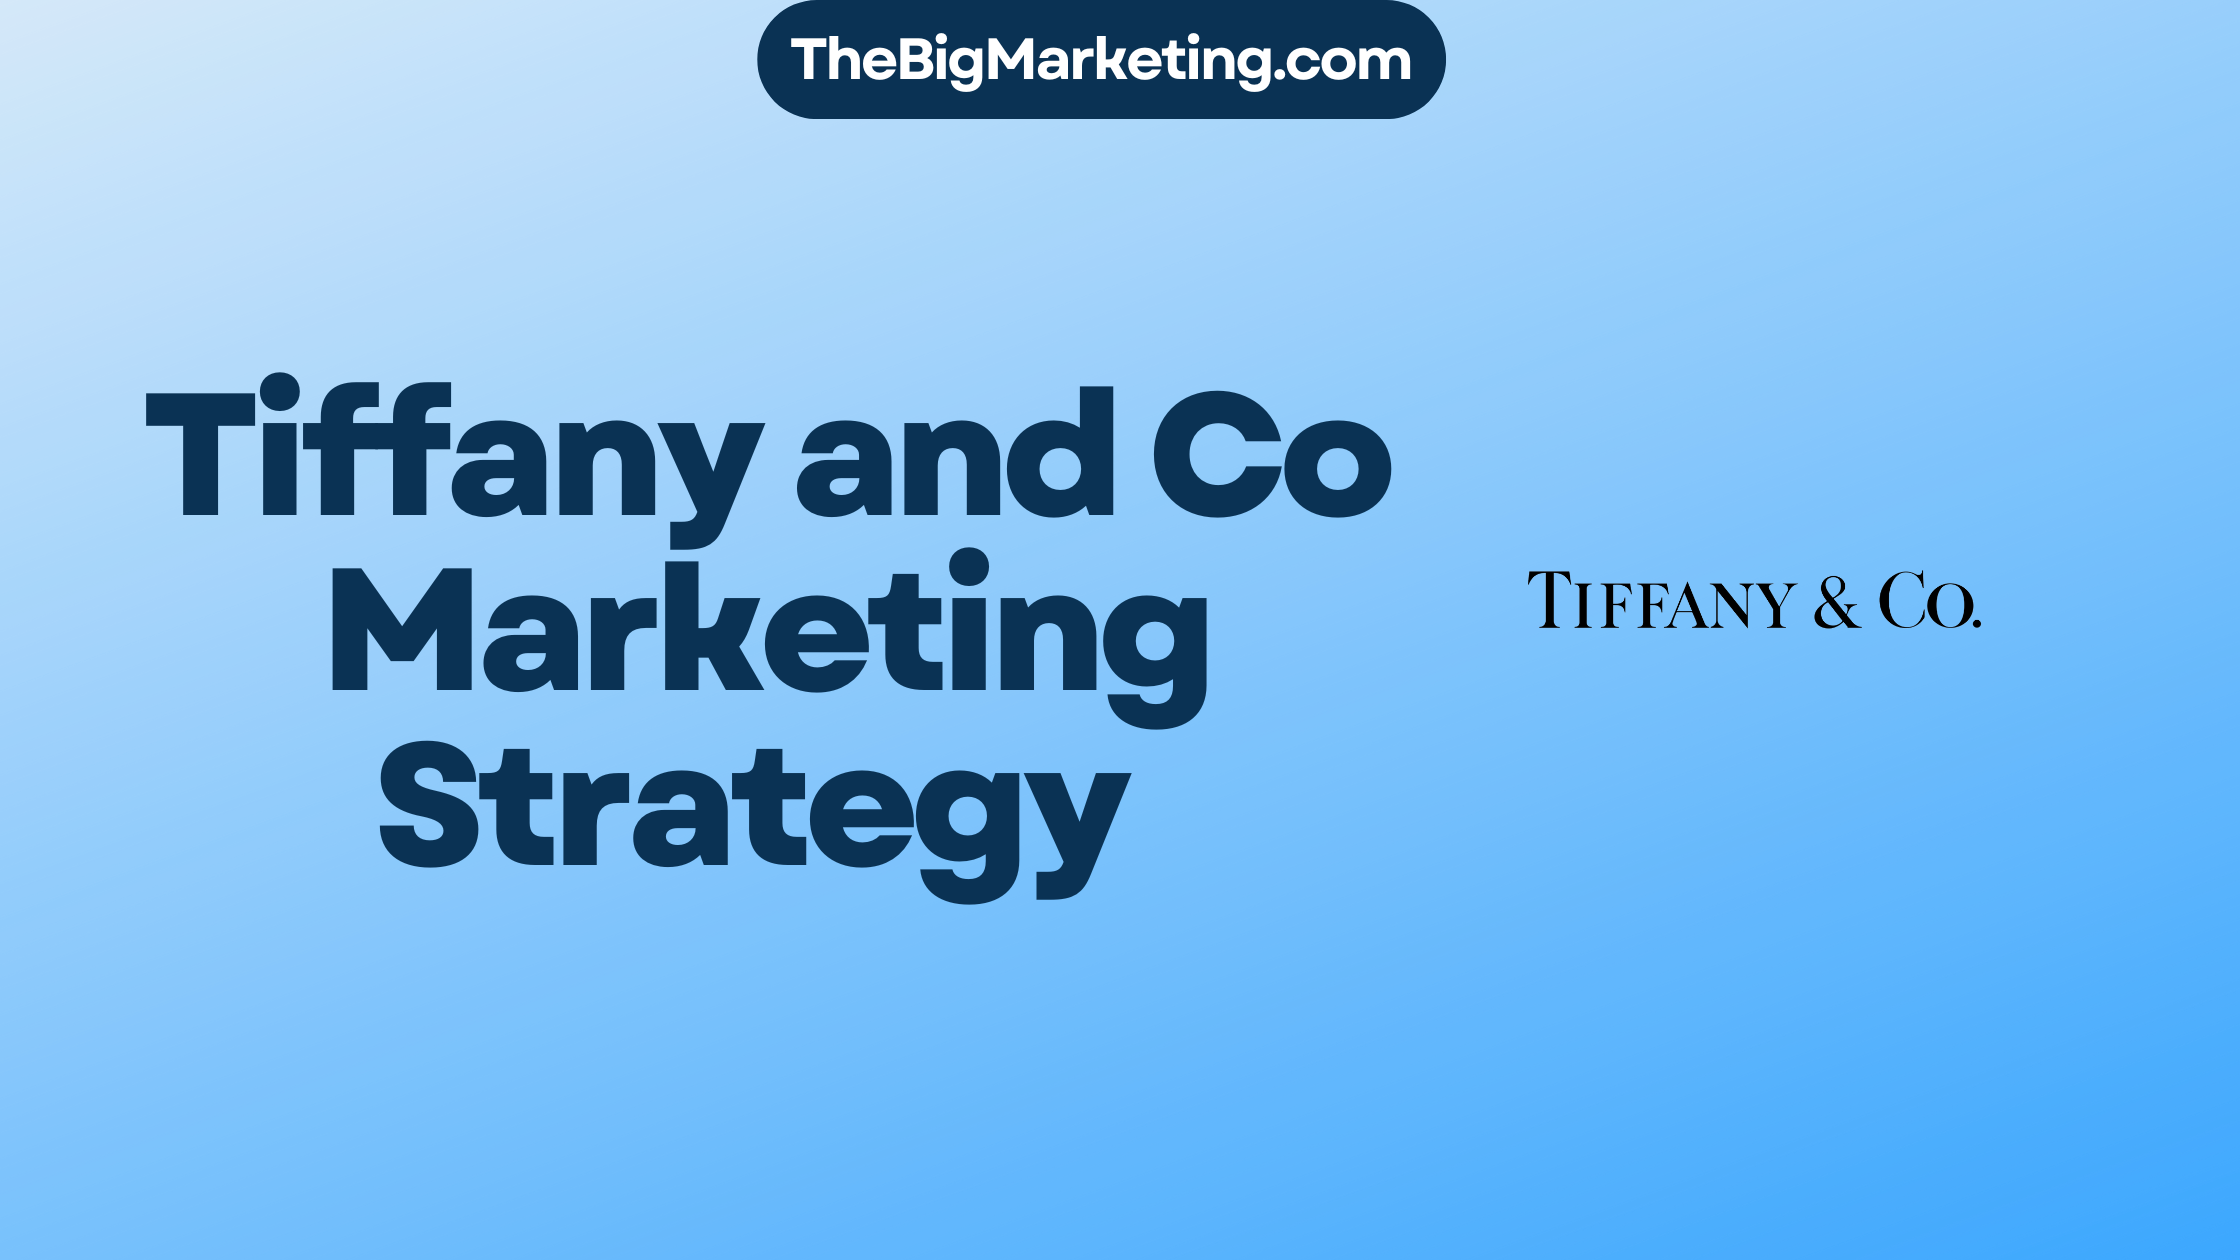 Tiffany and Co Marketing Strategy